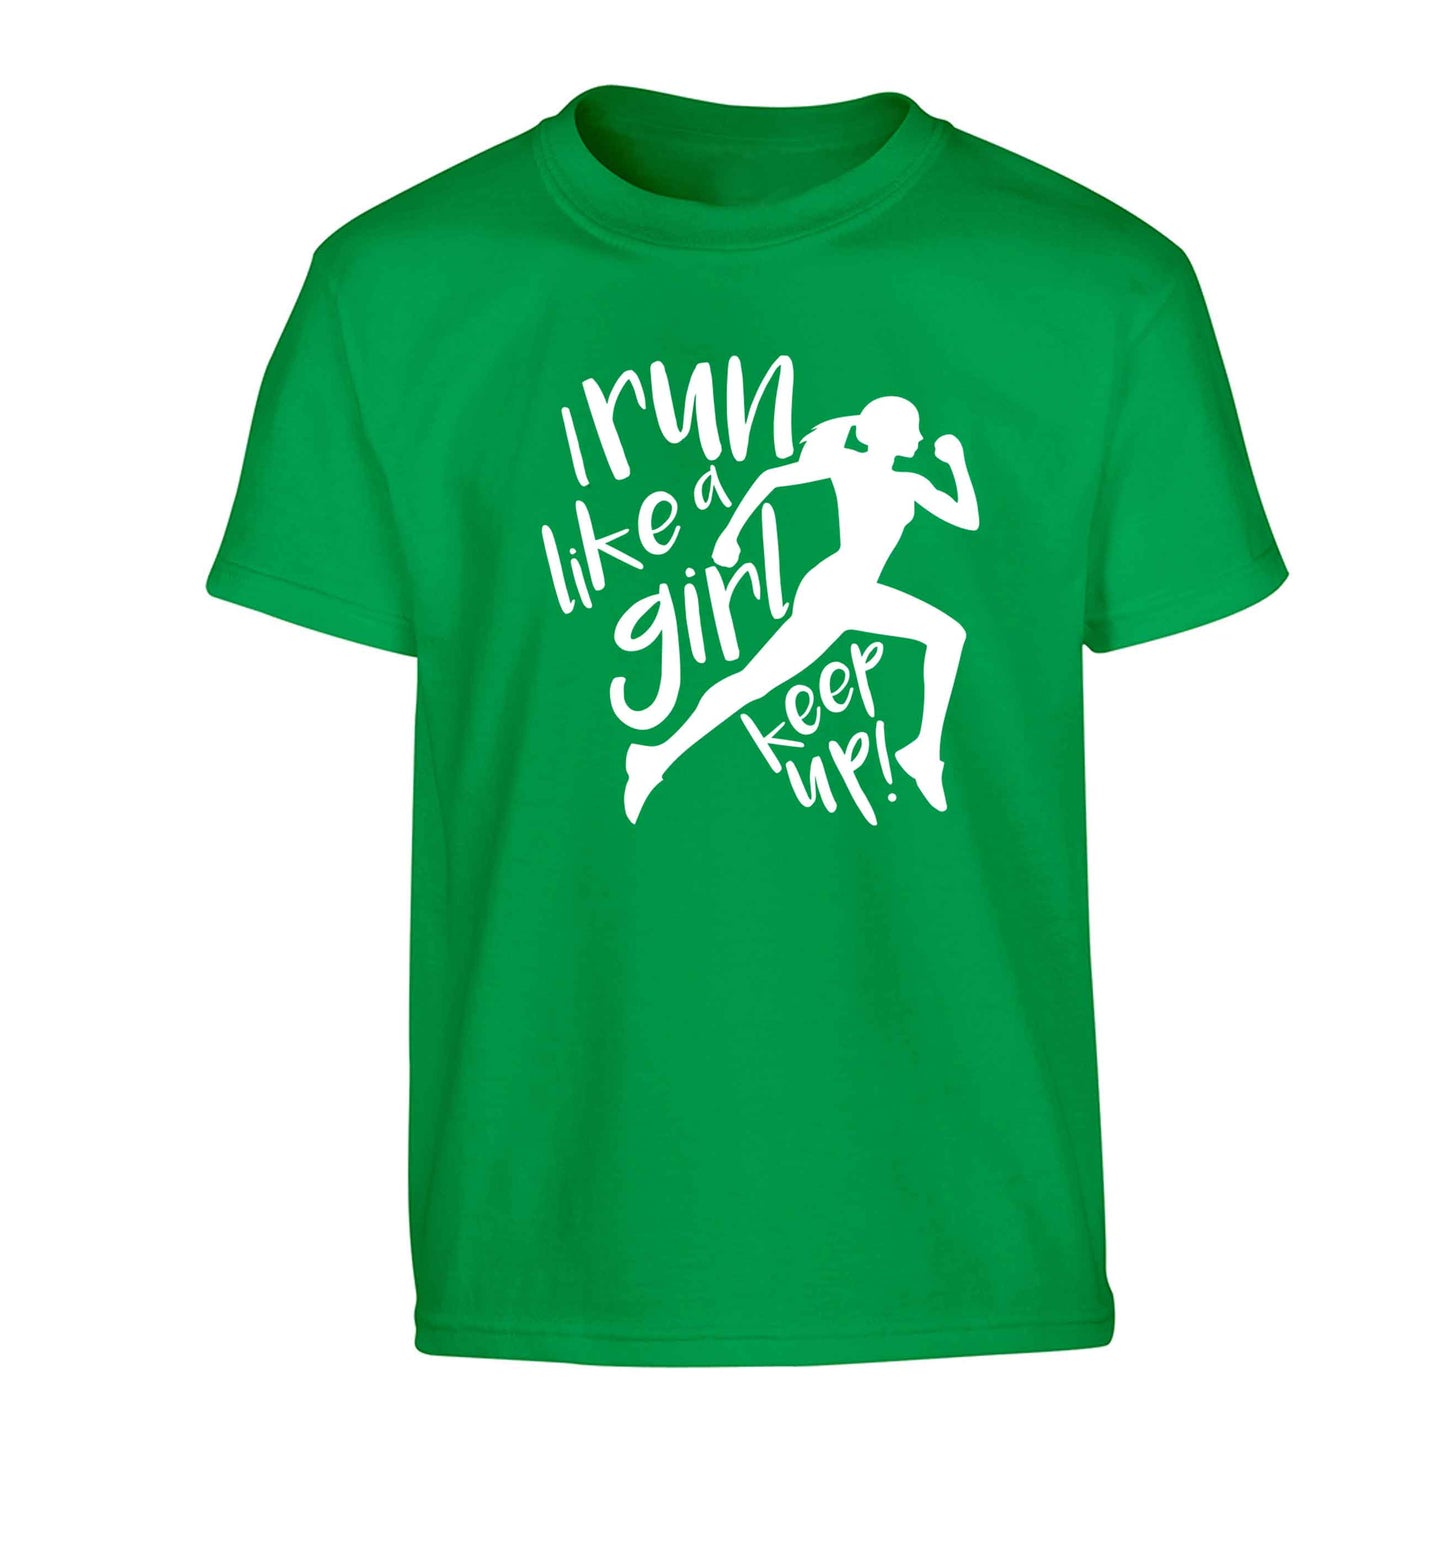 I run like a girl, keep up! Children's green Tshirt 12-13 Years